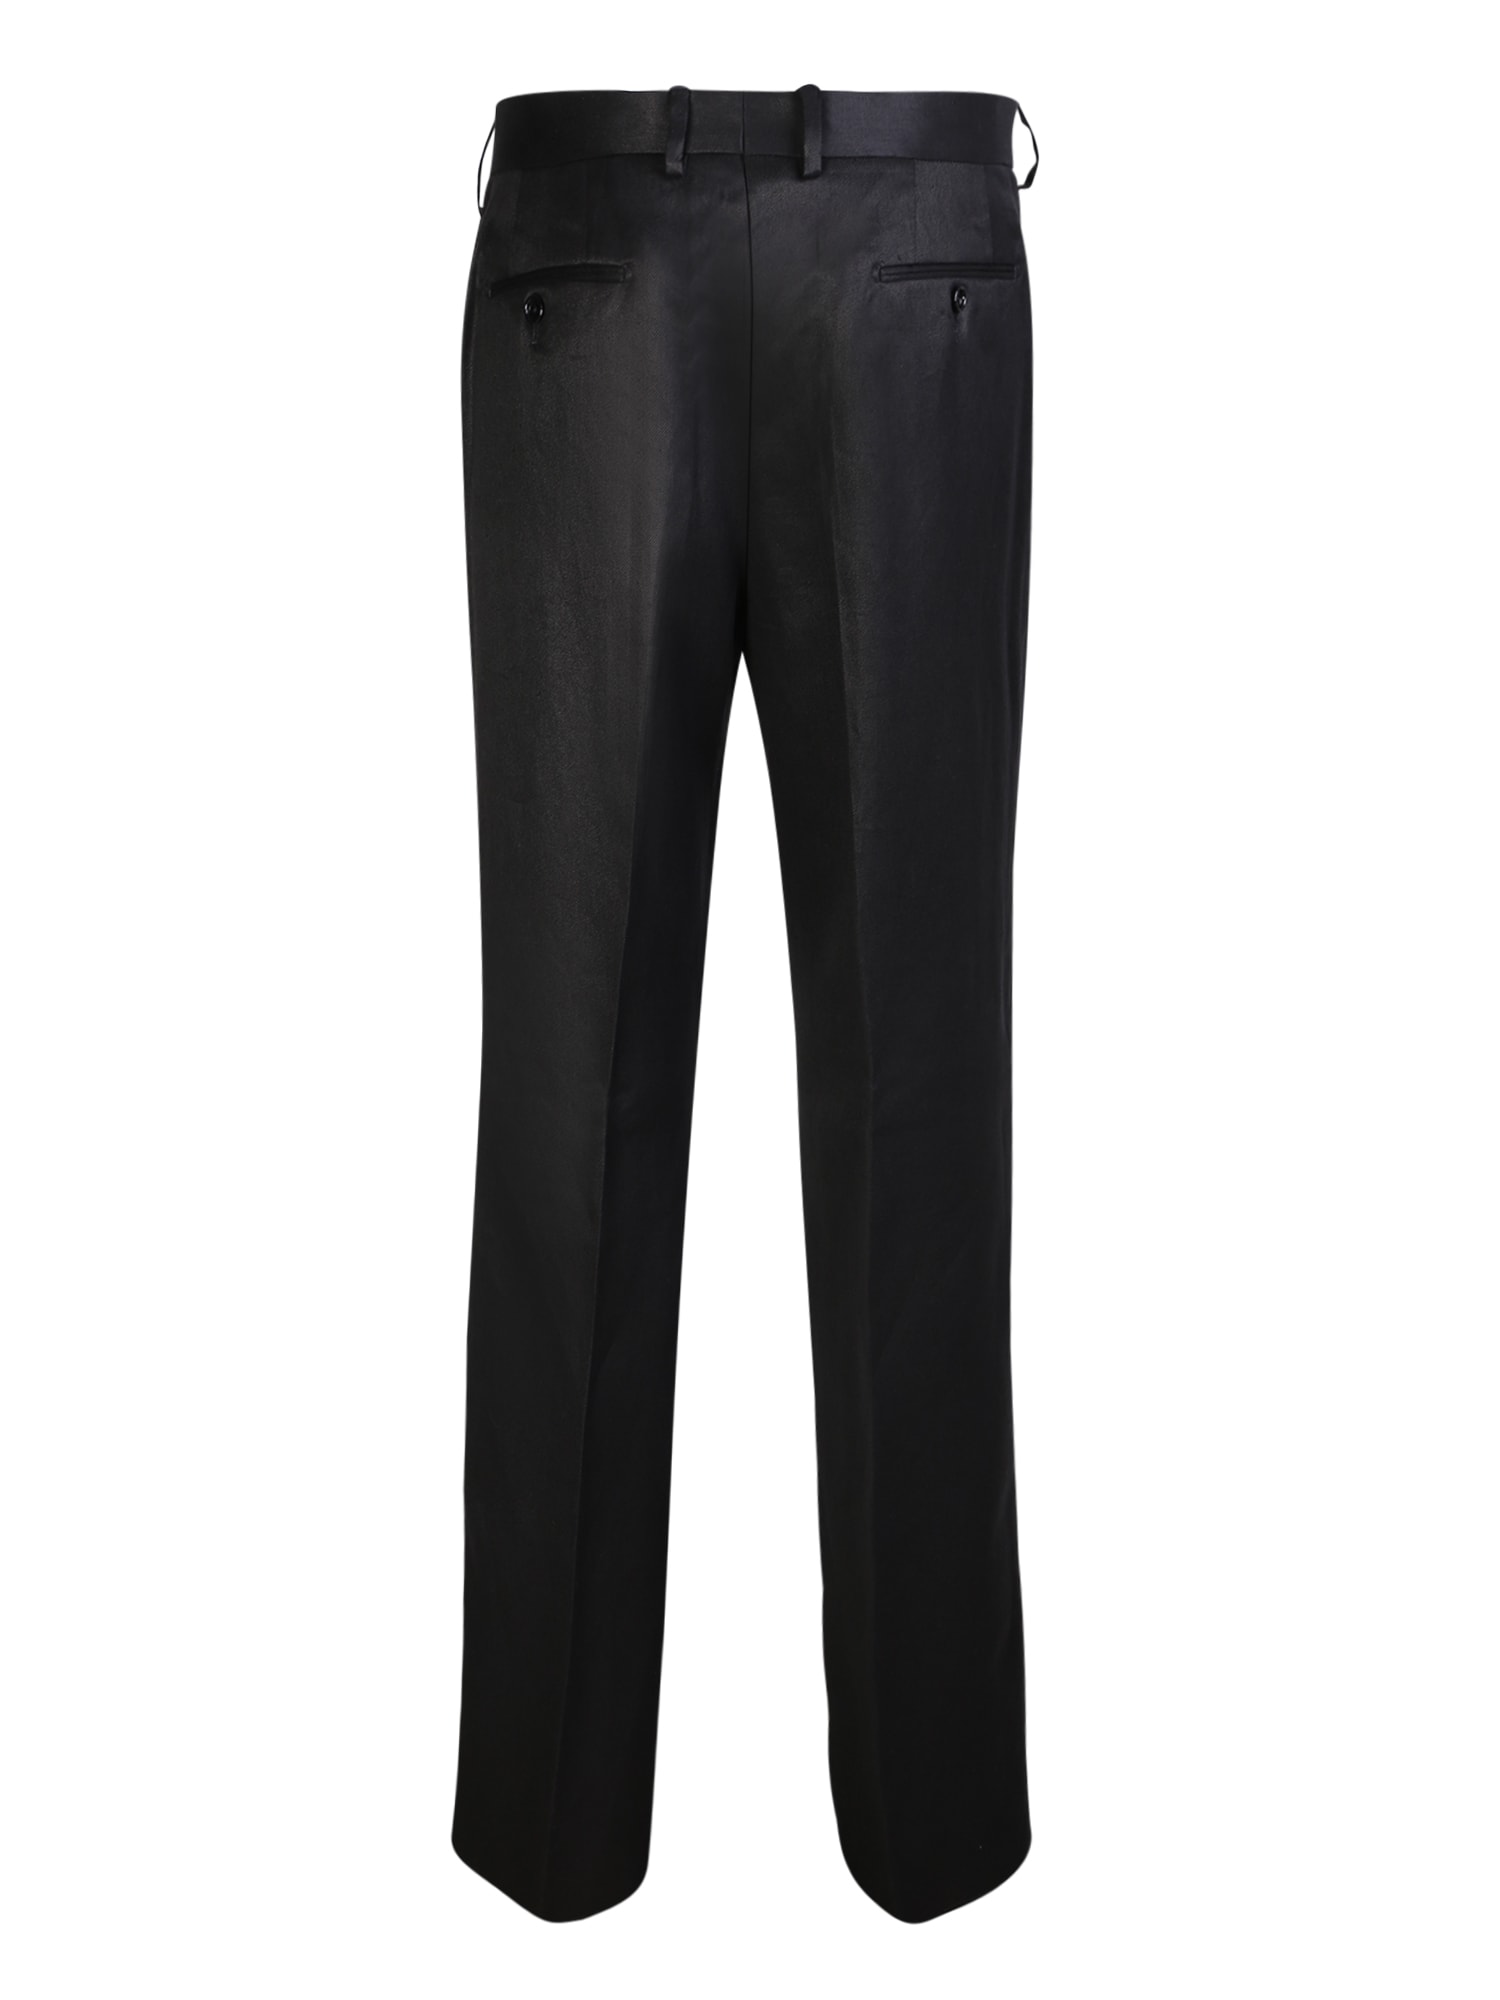 Shop Lardini Linen Black Trousers